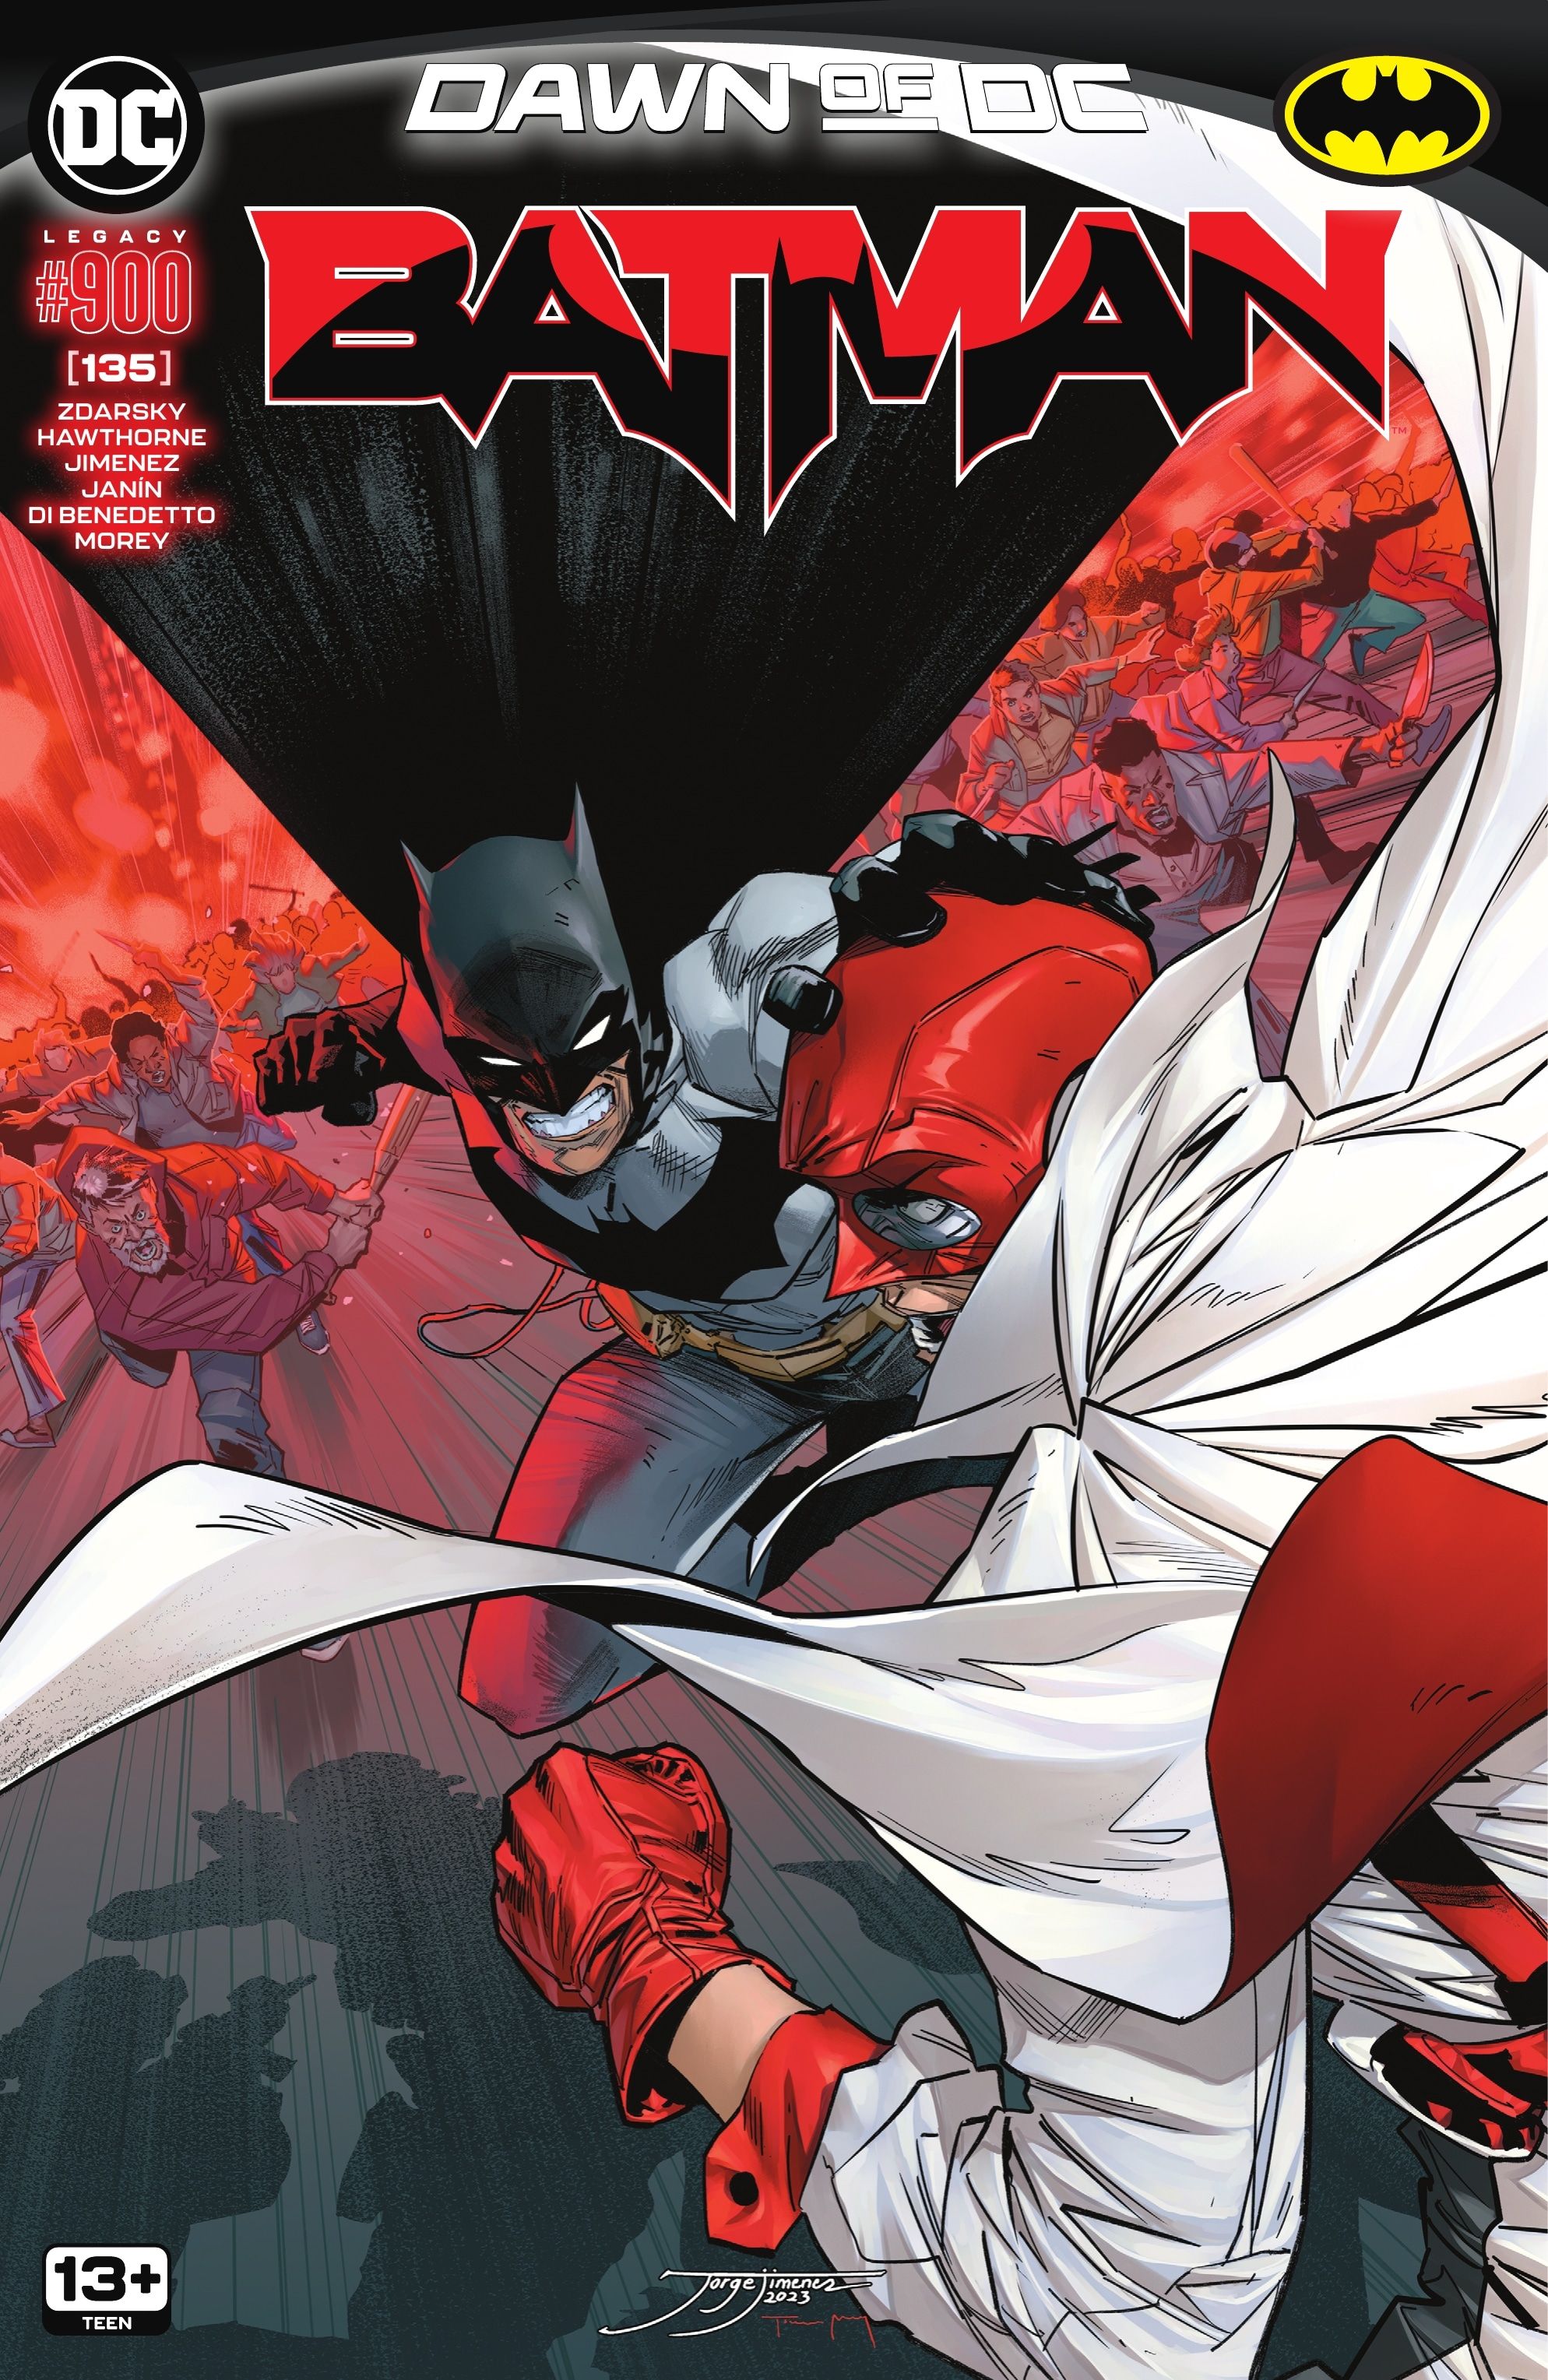 Cover A of Batman #135